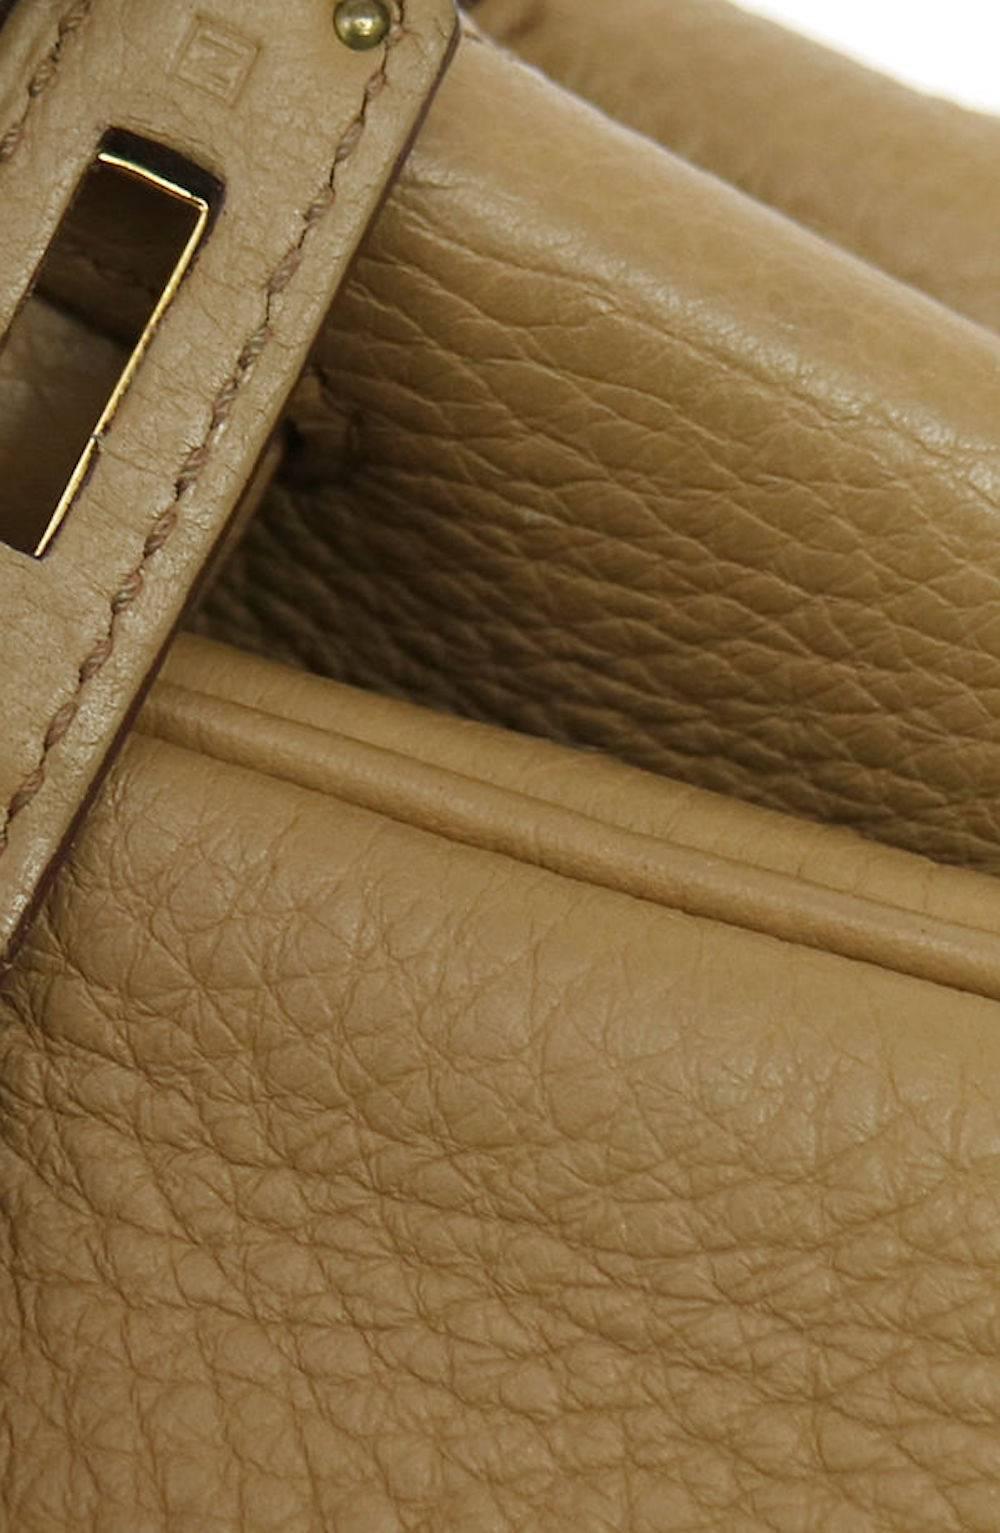 Women's Hermes Birkin 35 Taupe Gold CarryAll Satchel Tote Shoulder Bag